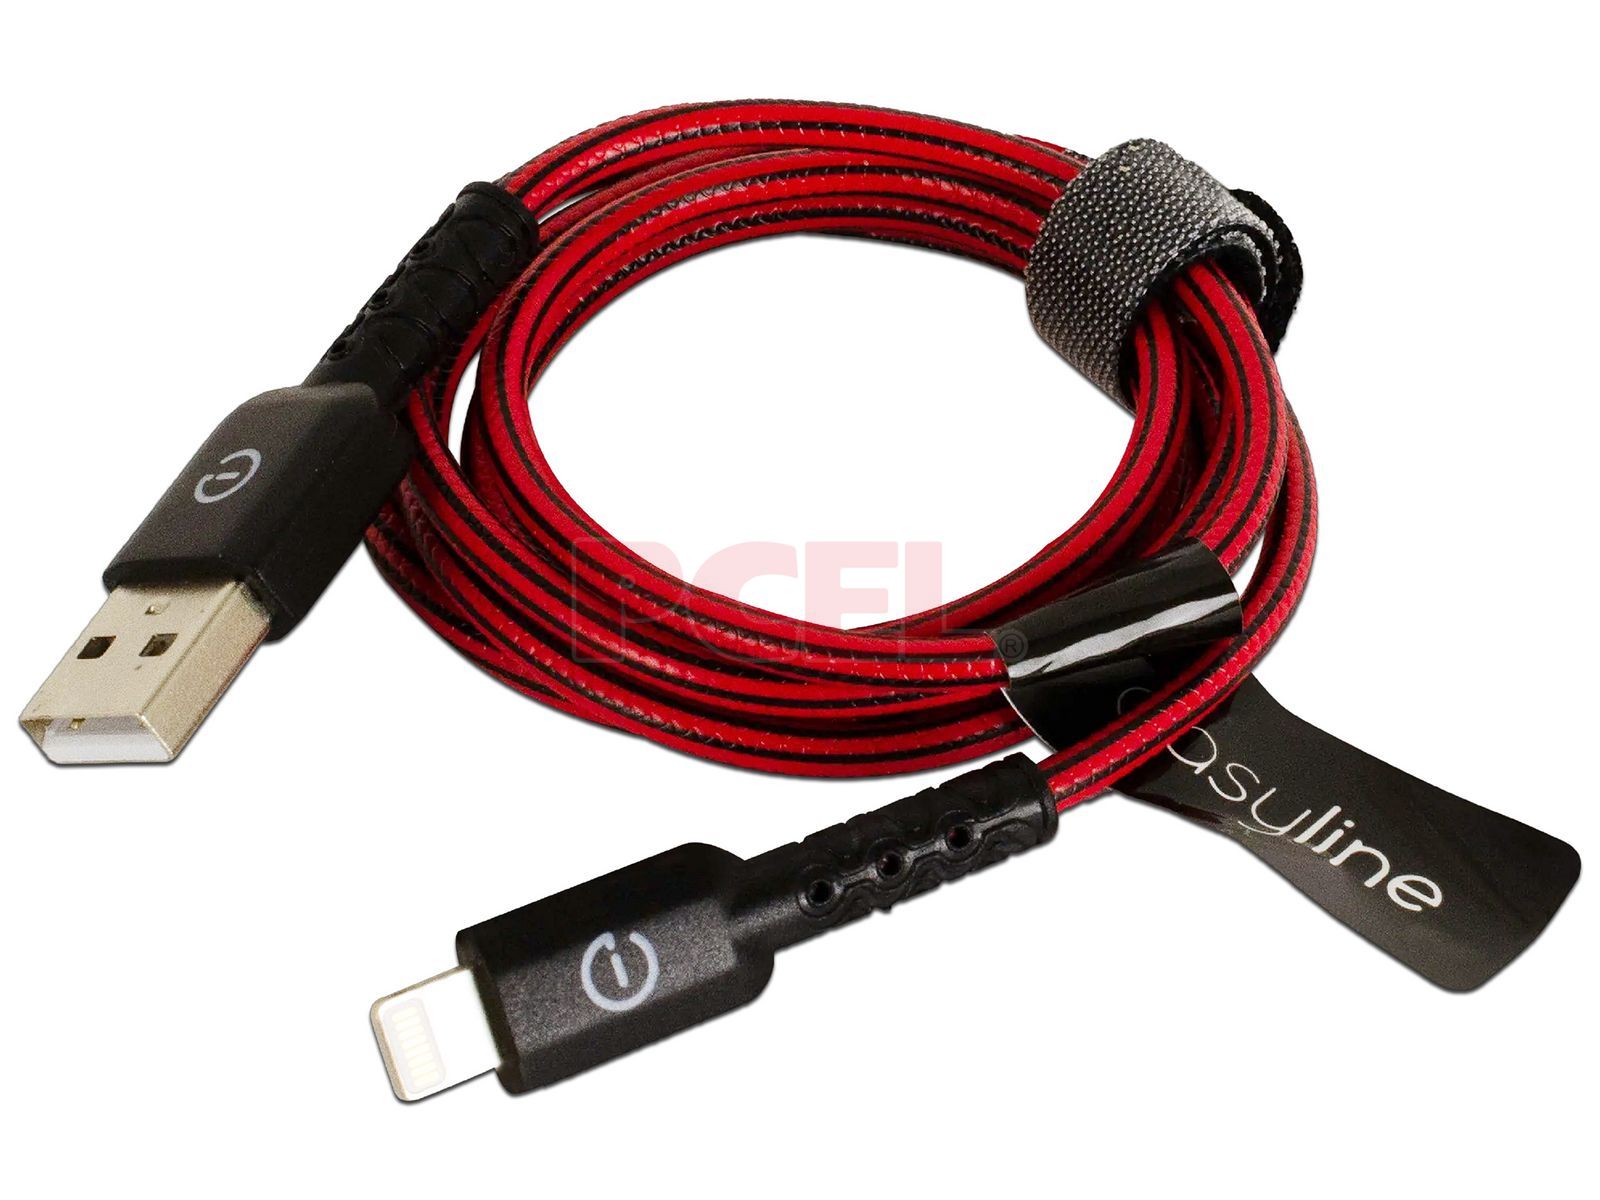 Cable corto en color conexión de USB tipo C a duo micro USB y Lighting  Color Rojo